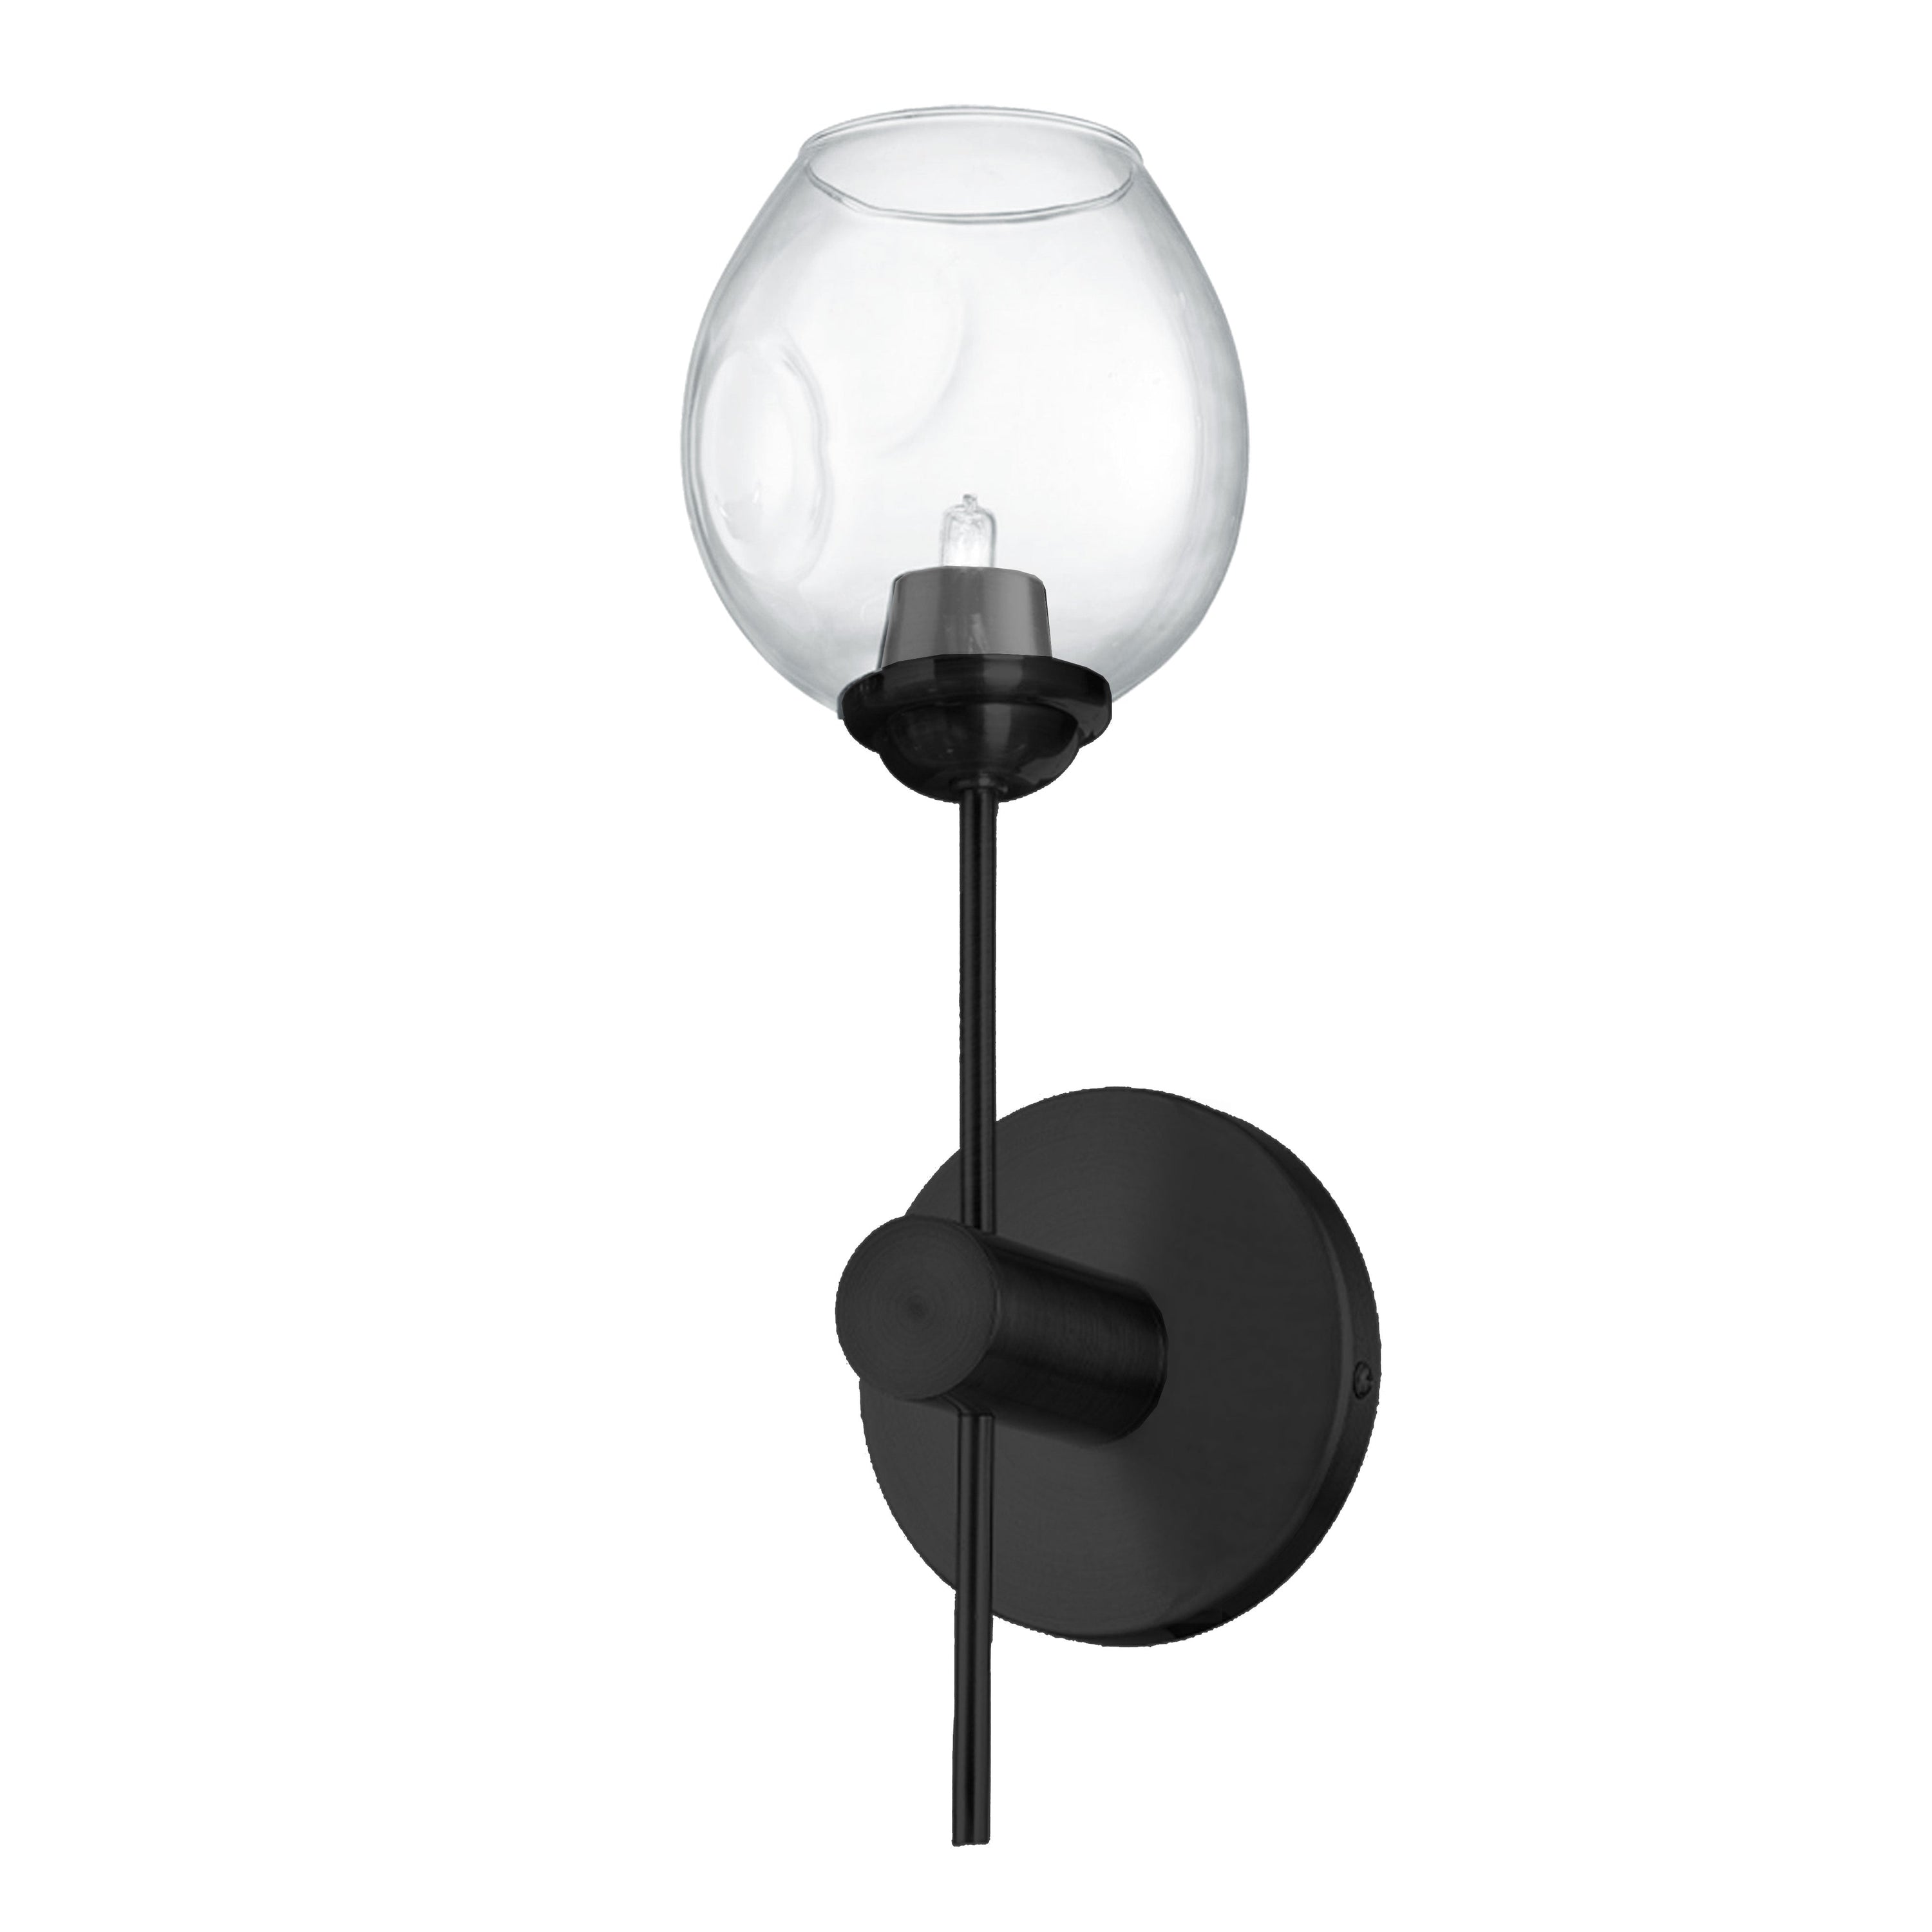 Dainolite Abii - ABI-141W-MB-CLR - 1 Light Matte Black Vanity Fixture Light w/ Clear Glass - Black